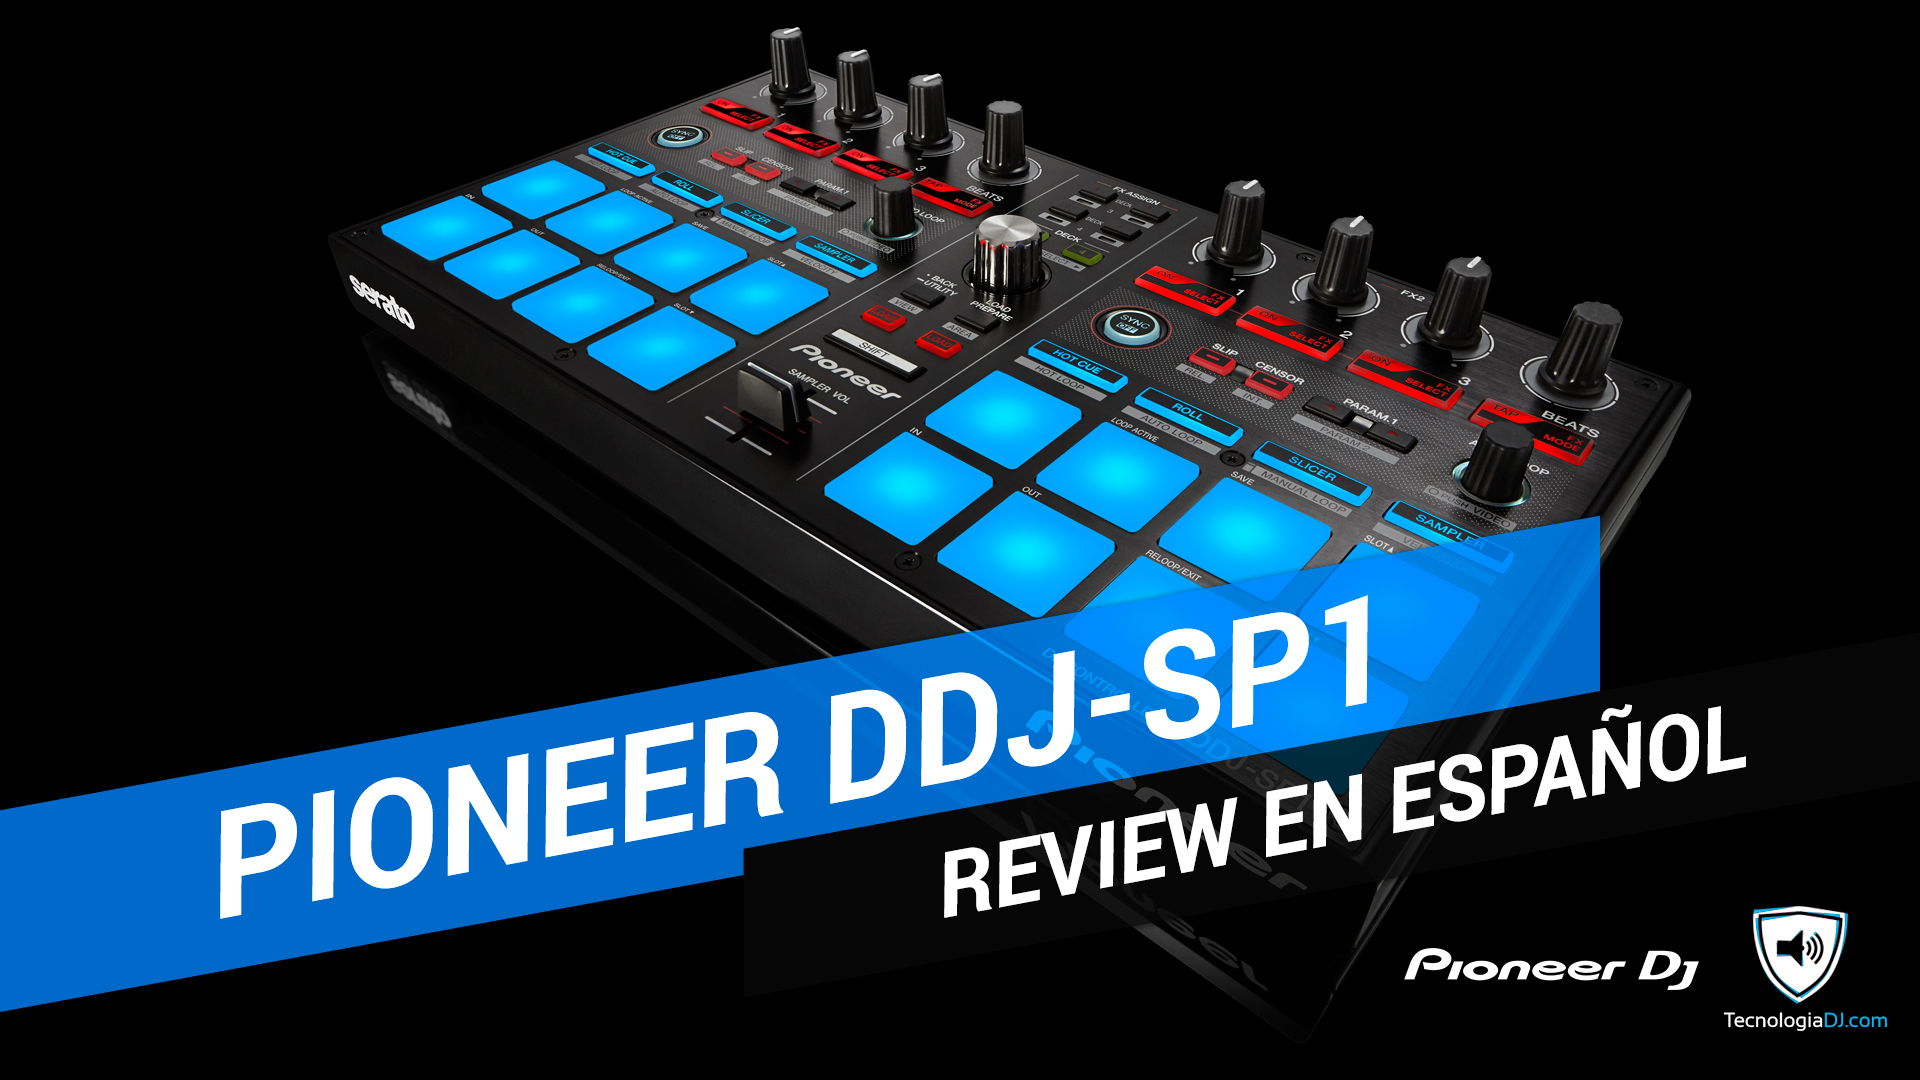 Review en español Pioneer DDJ-SP1